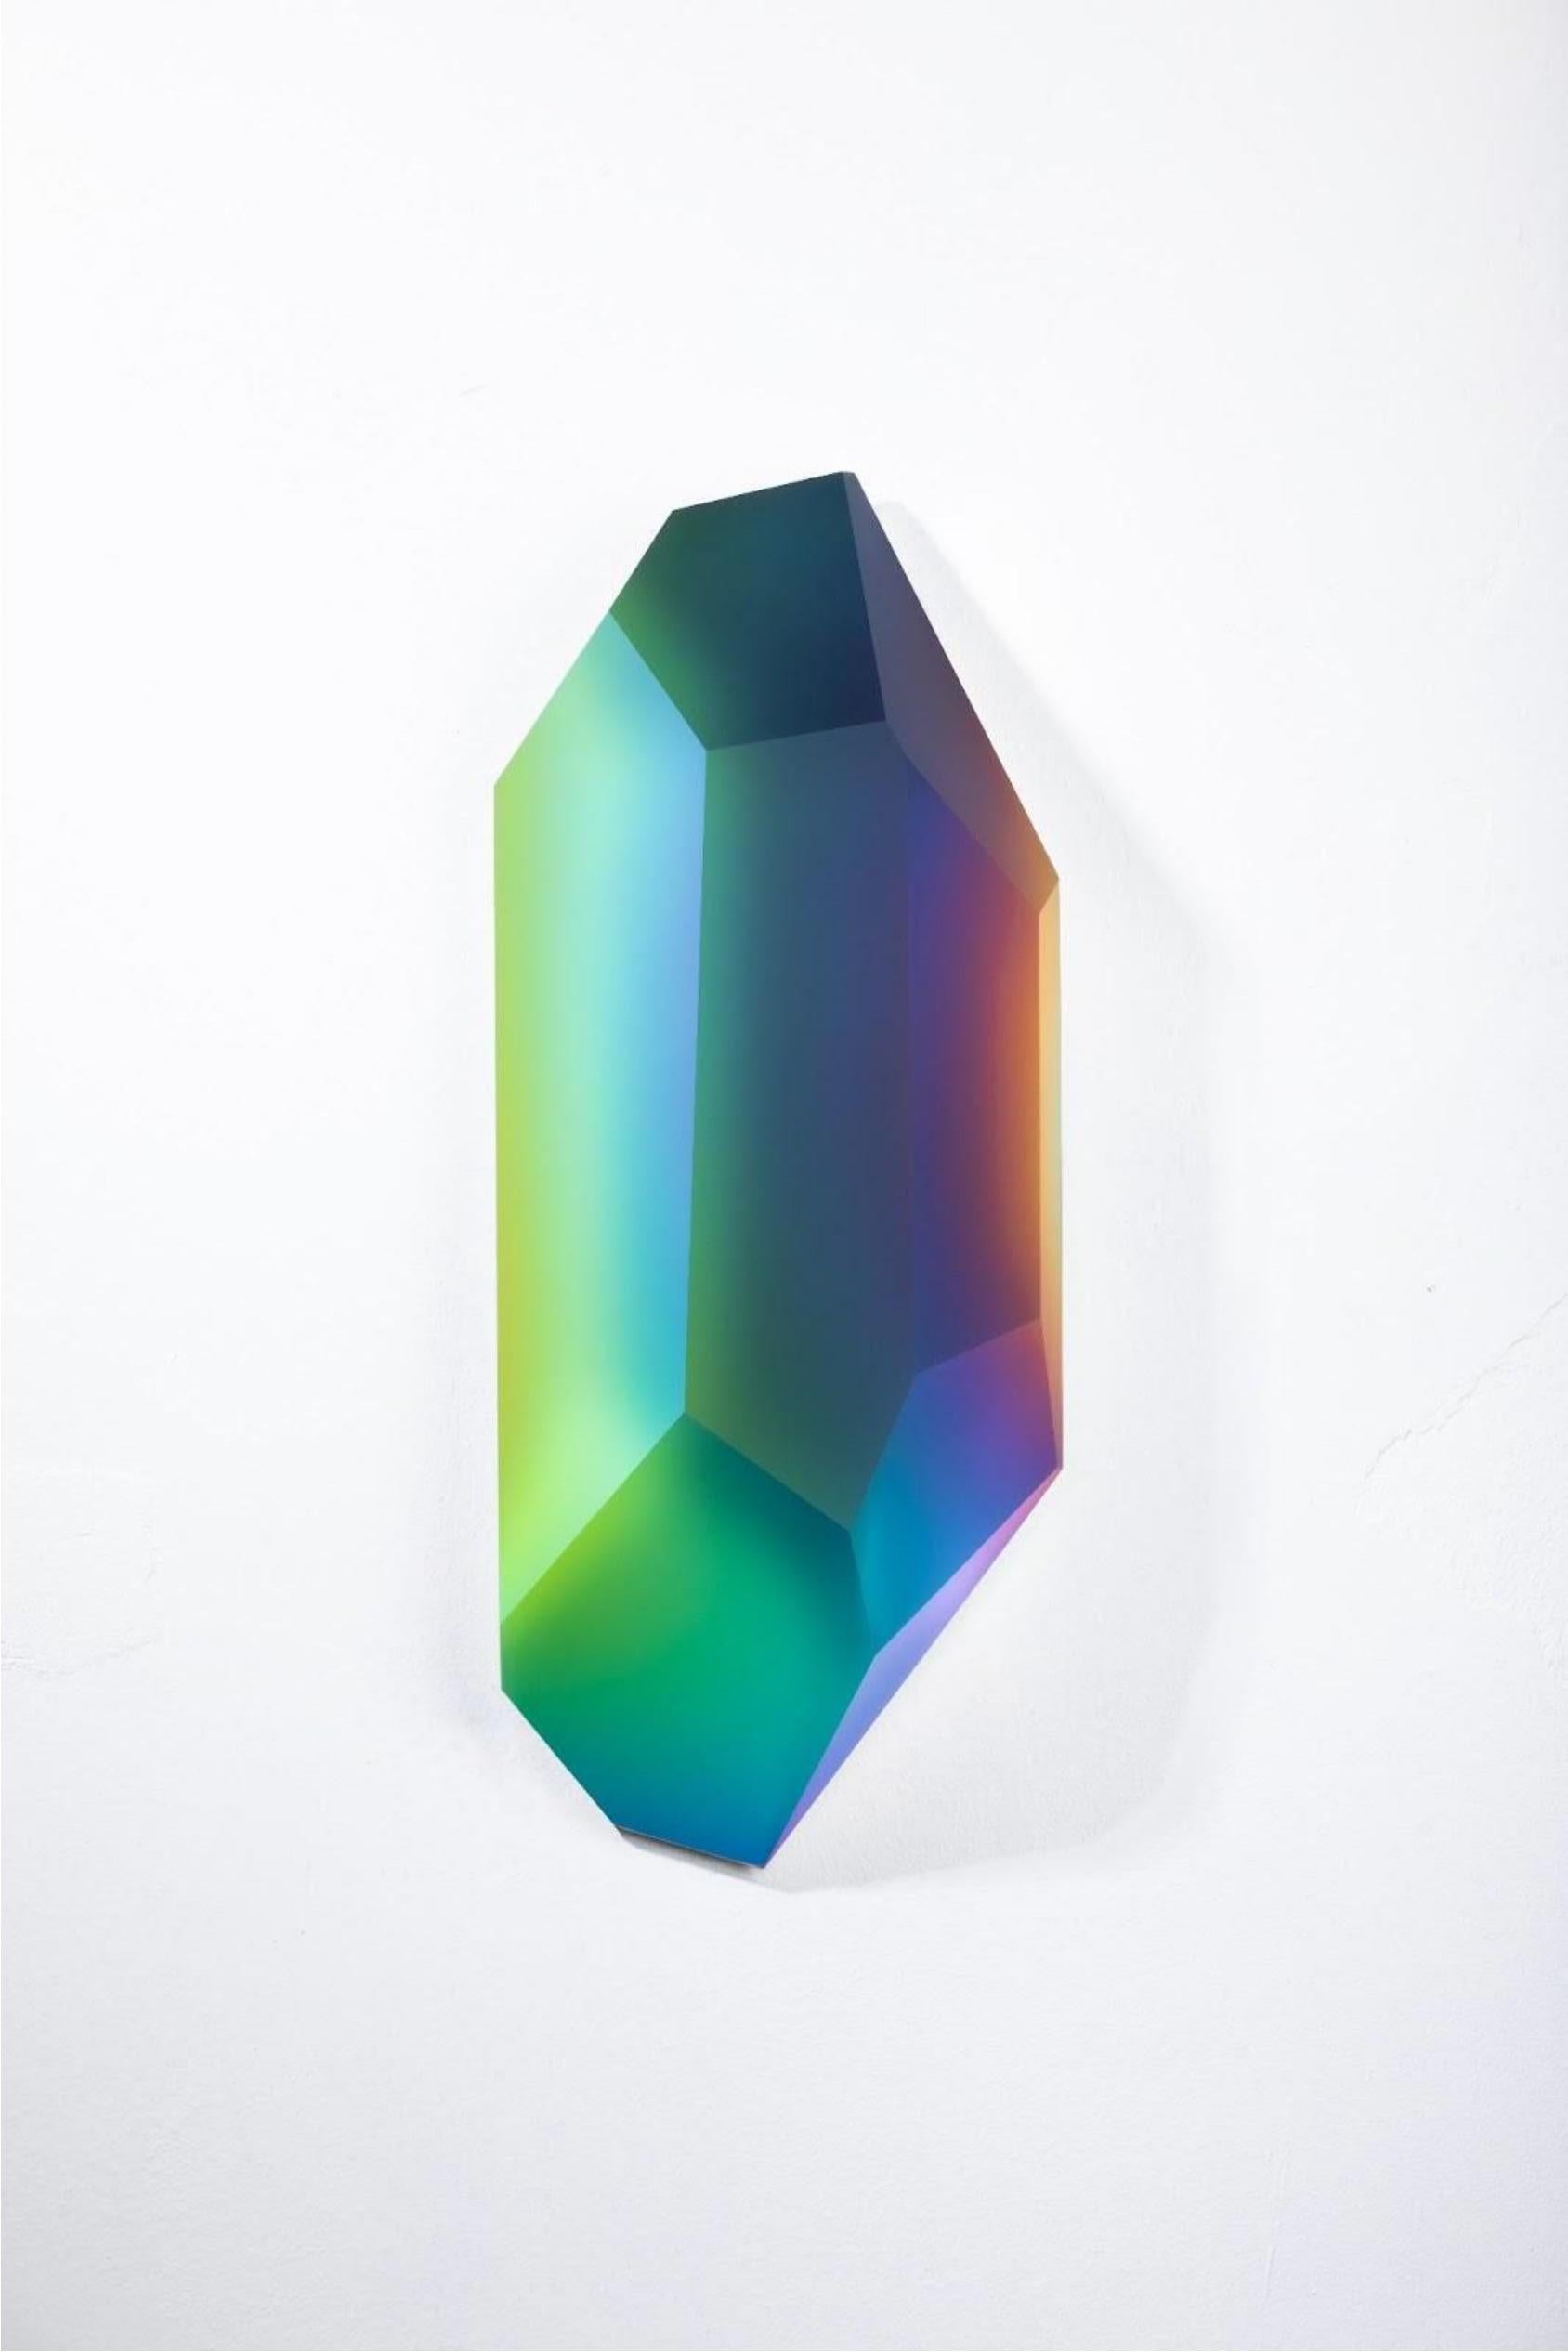 Pretty Mirage 0906 von Lukas Novak
Abmessungen: B 12 x T 23 x H 54 cm
MATERIALIEN: Geschliffenes Glas, Kristall, Farbverlauf

Die Pretty Mirage Serie ist aus Wandkristallen gefertigt. Es ist eine einzigartige Komposition aus Glasschliffen und einem